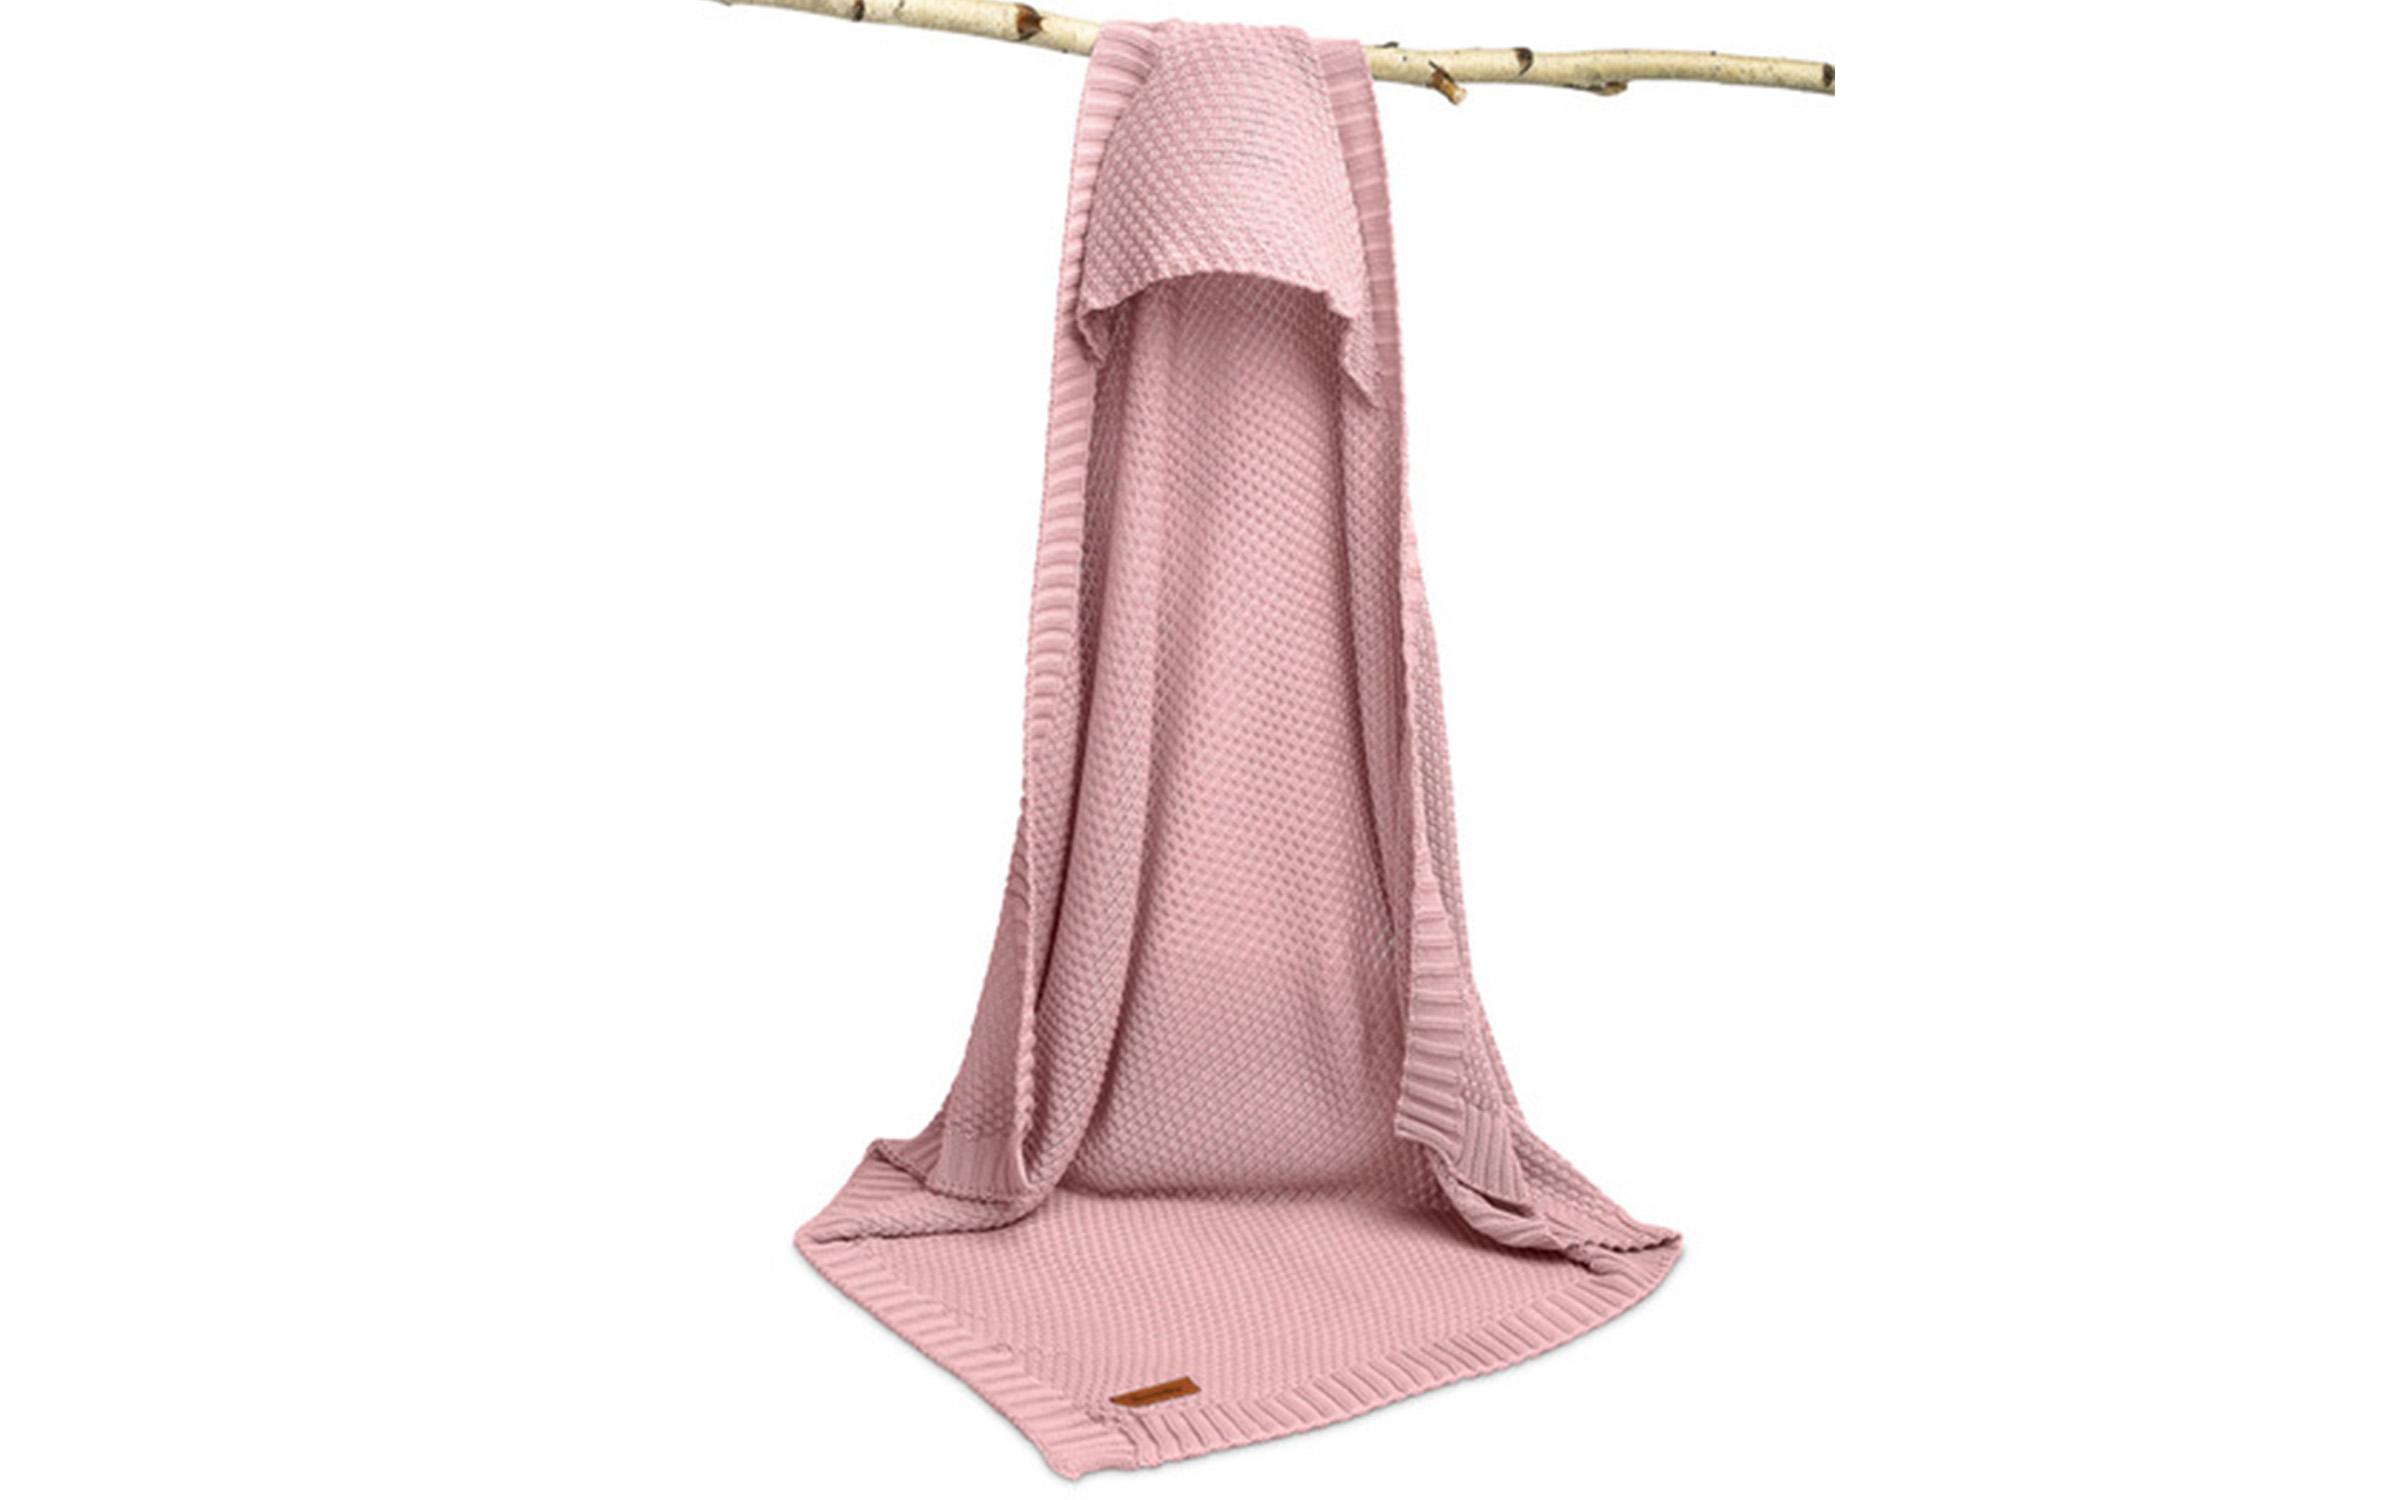 Πλεκτή κουβέρτα, ροζ, 90/85 cm  4